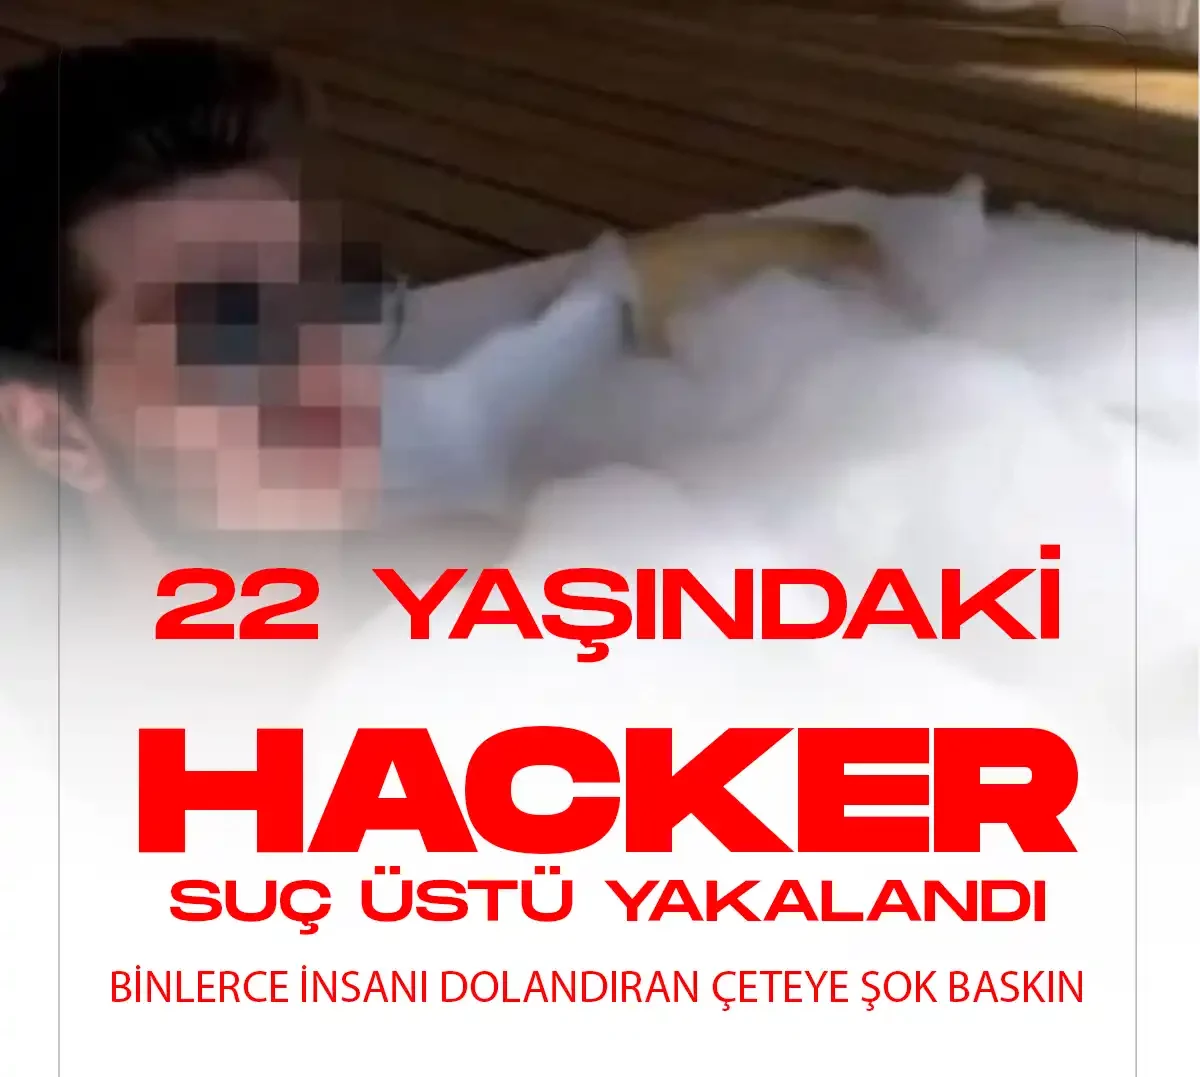 22 yaşındaki hacker suç üstü yakalandı.